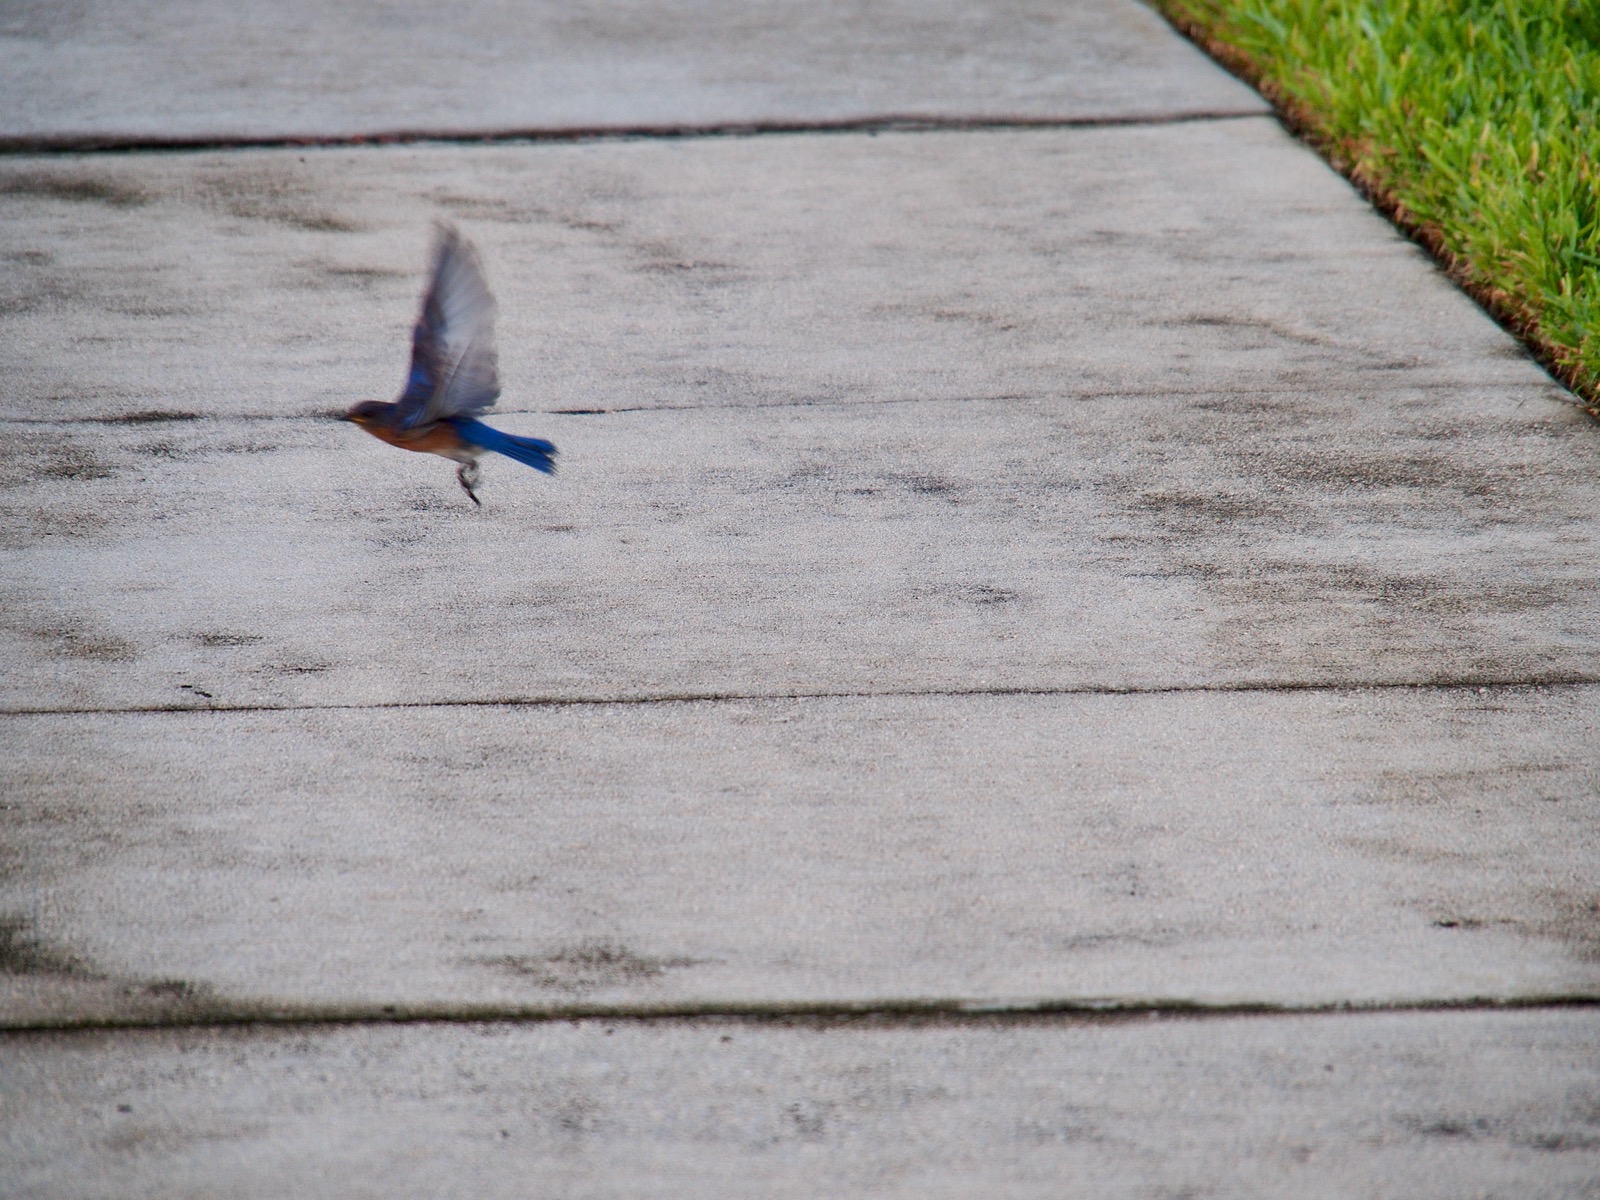 Bluebird taking flight in a blur from a sidewalk.